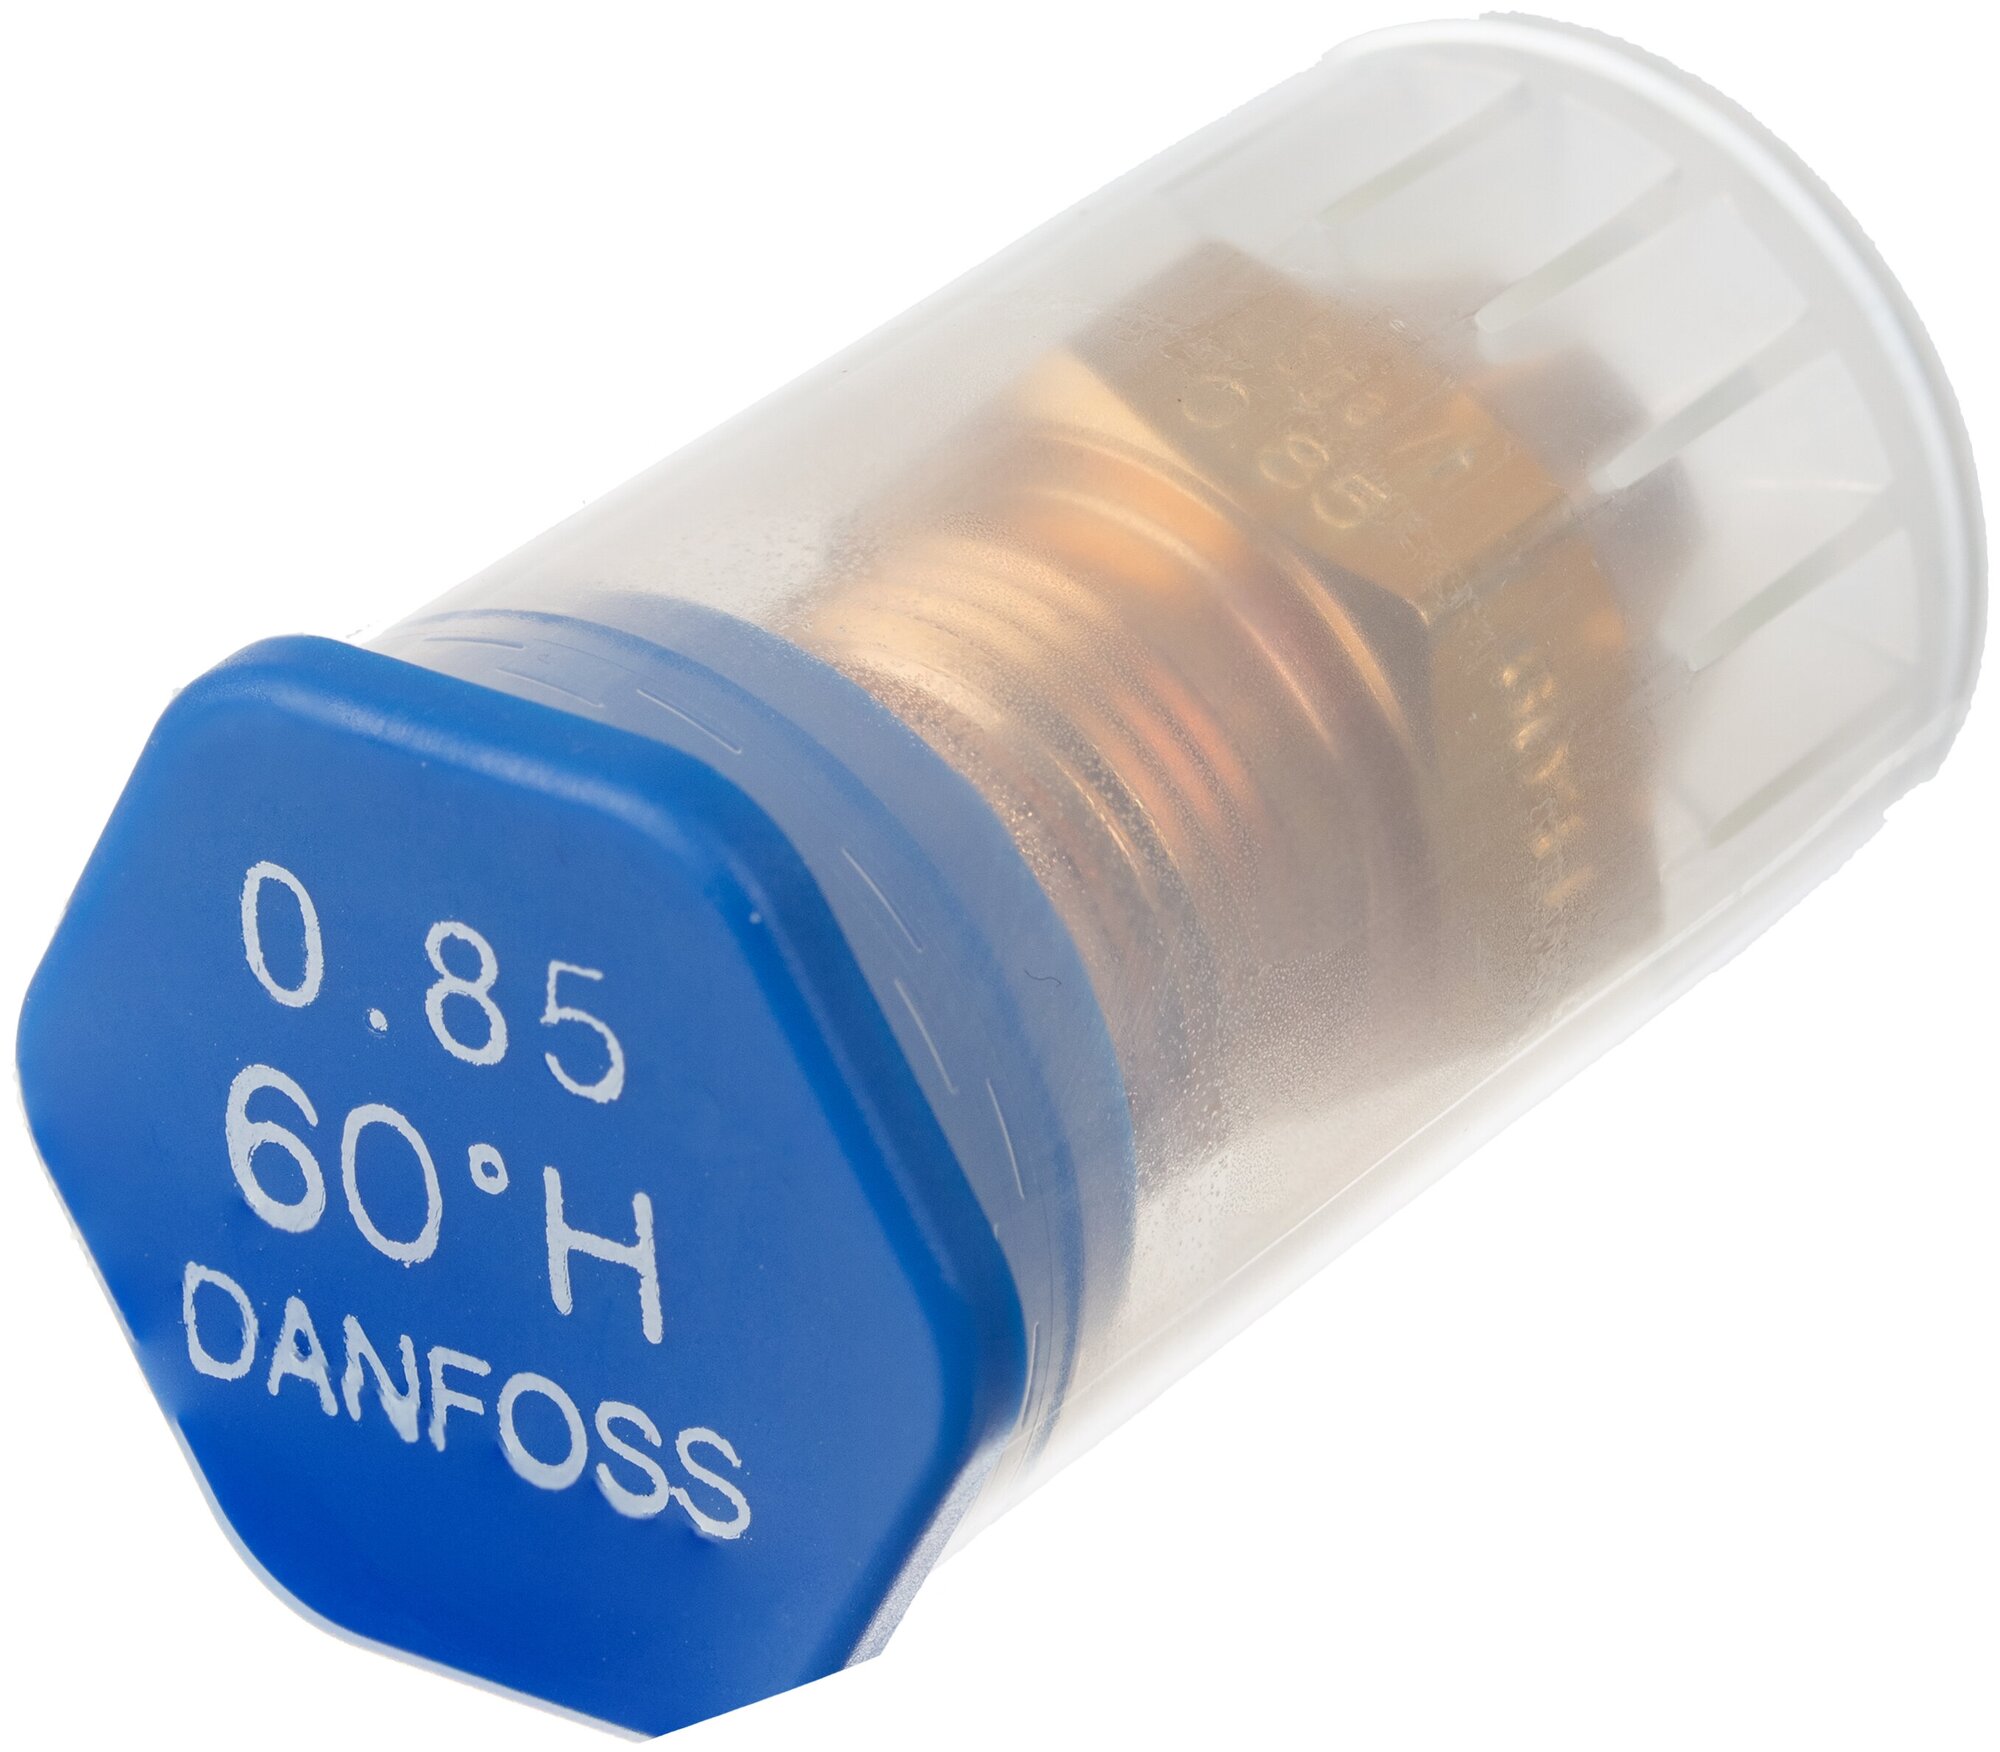 Форсунка для дизельного топлива DANFOSS 0.85 gal/h (3.31 kg/h) * 60 Н. арт. 030H6918